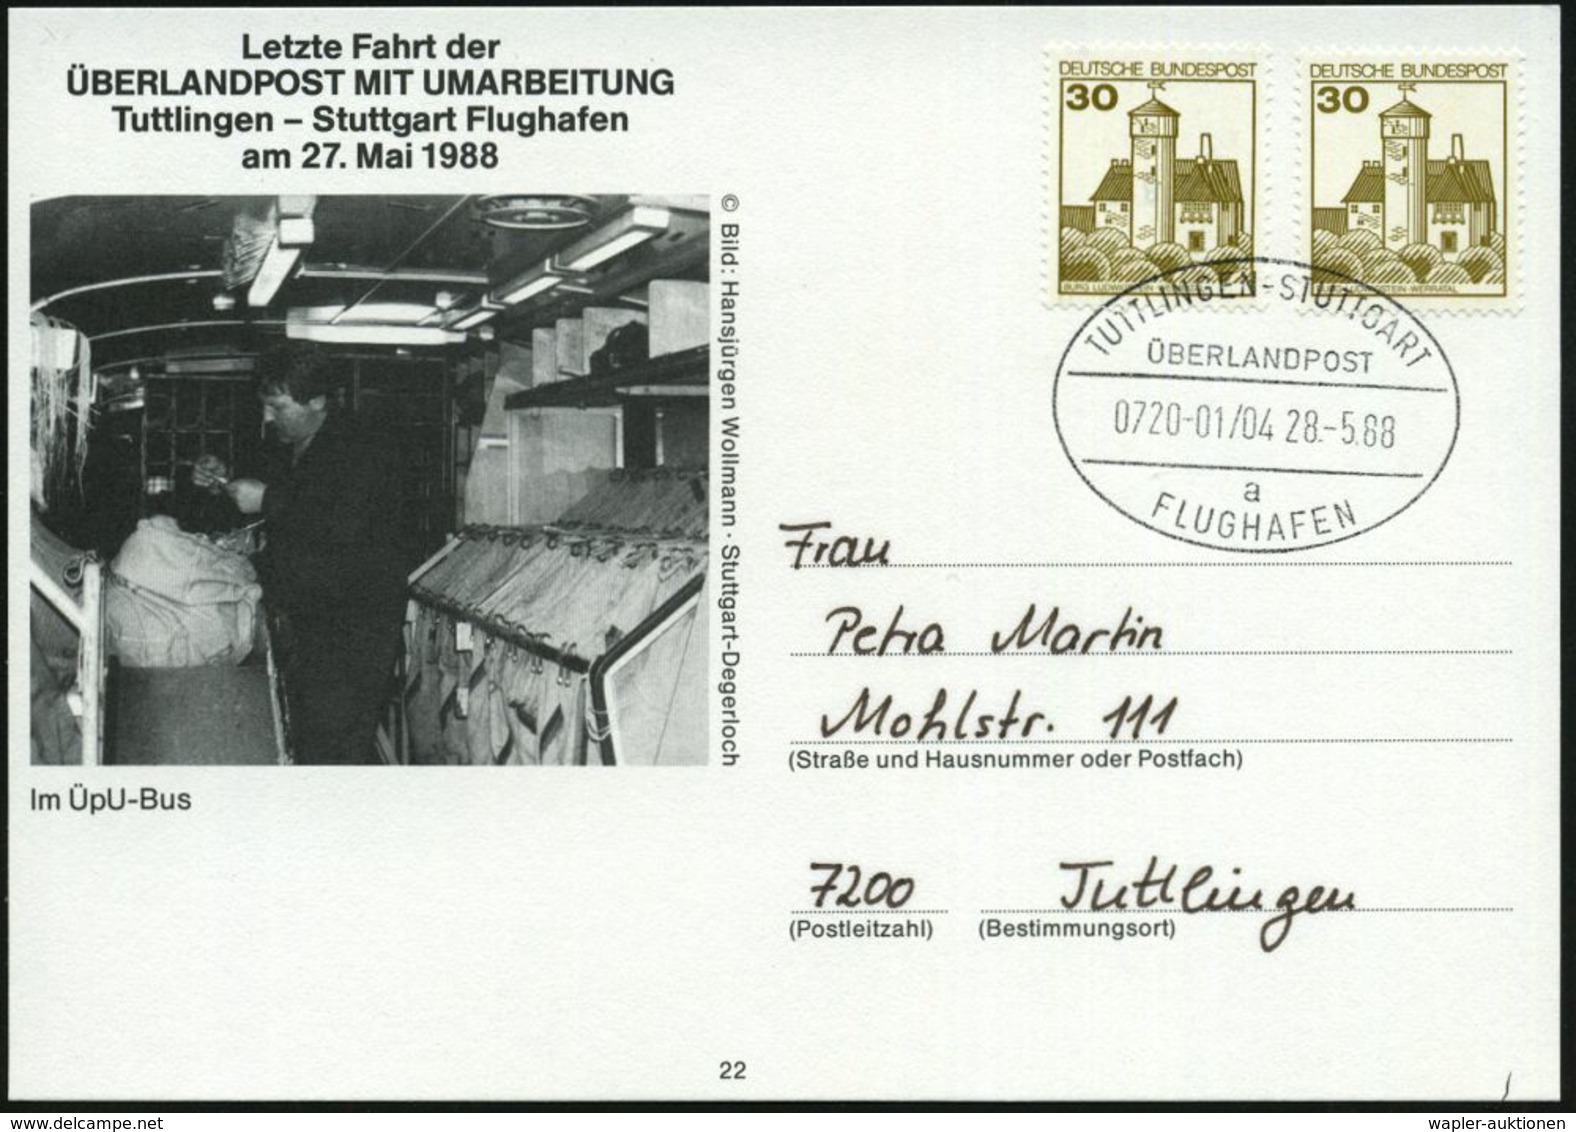 TUTTLINGEN-STUTTGART/ ÜBERLANDPOST/ 0720-01/ 04/ A/ FLUGHAFEN 1988 (28.5.) Oval-Stempel Auf Sonder-Kt.: Letzte Fahrt (Po - Cars